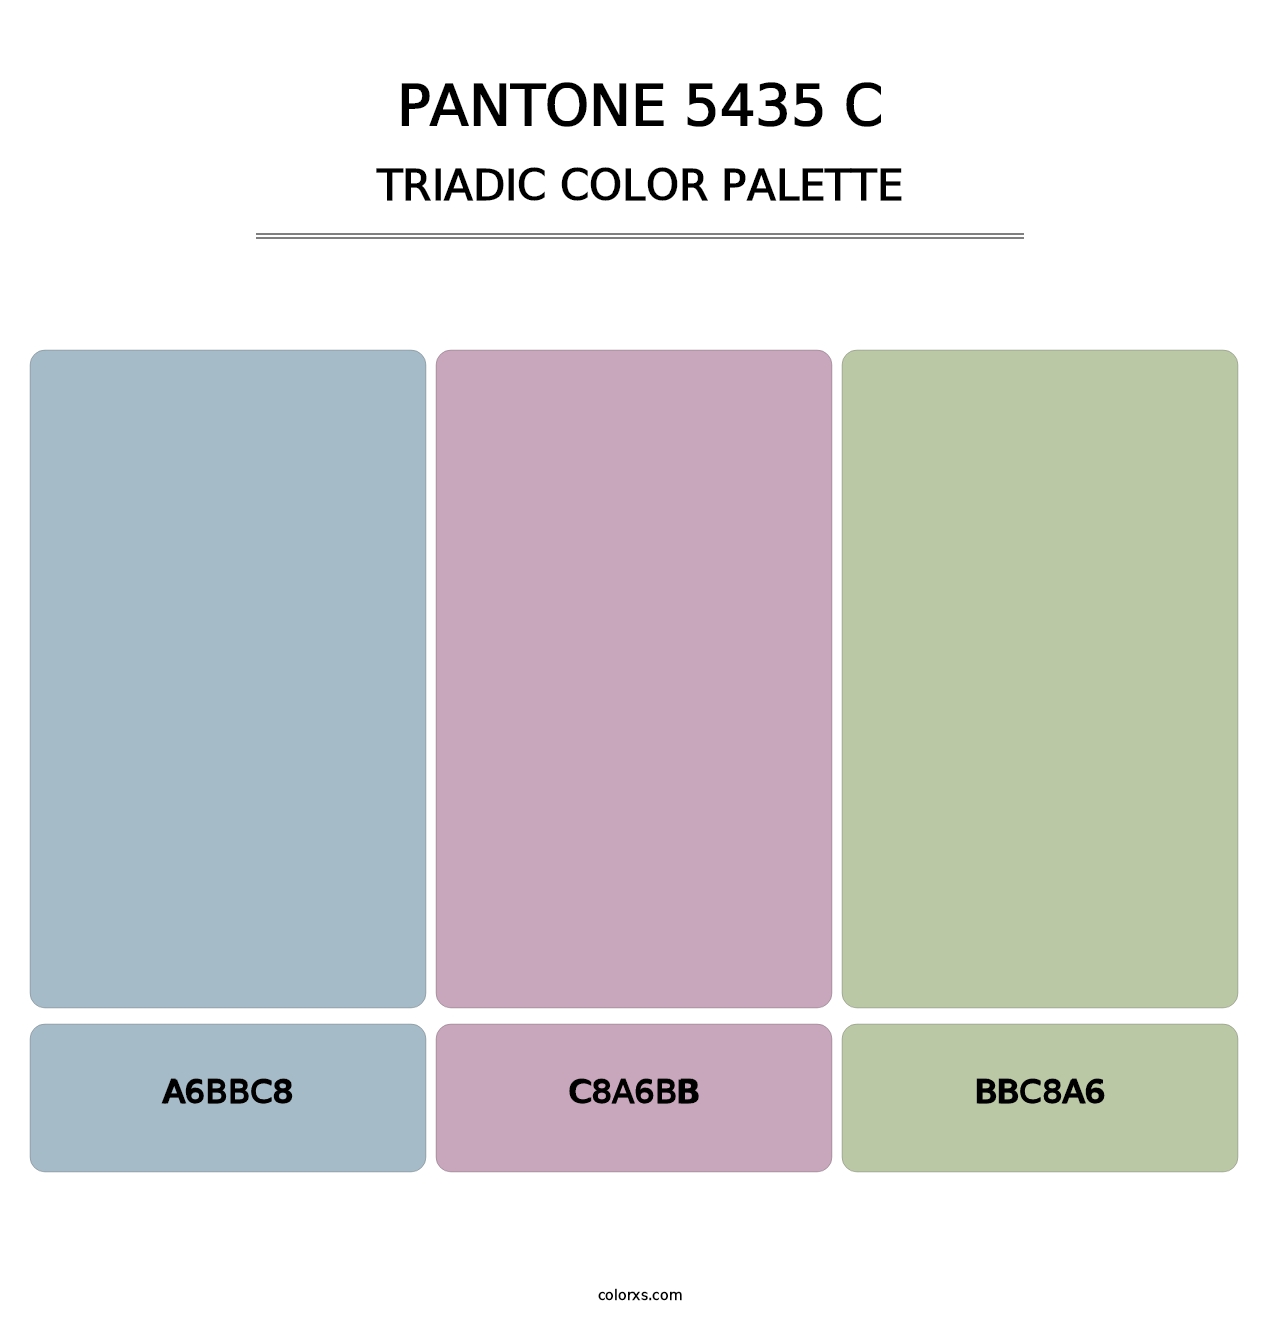 PANTONE 5435 C - Triadic Color Palette